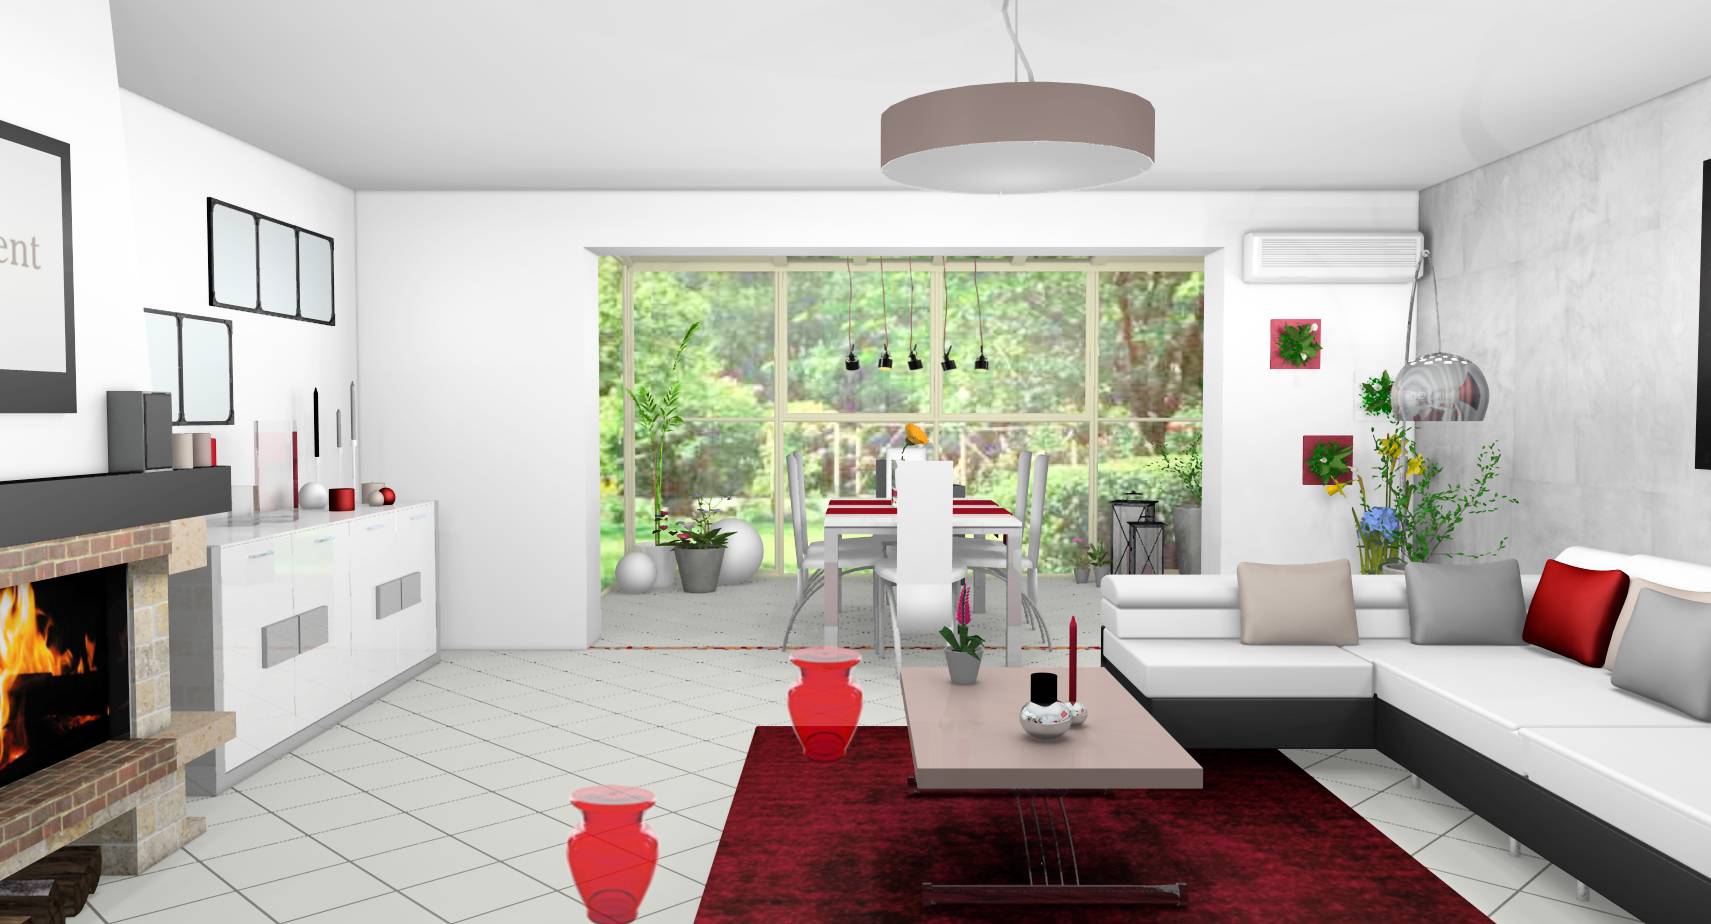 Séjour salle à manger véranda design moderne verrière laqué blanc gris touches rouges